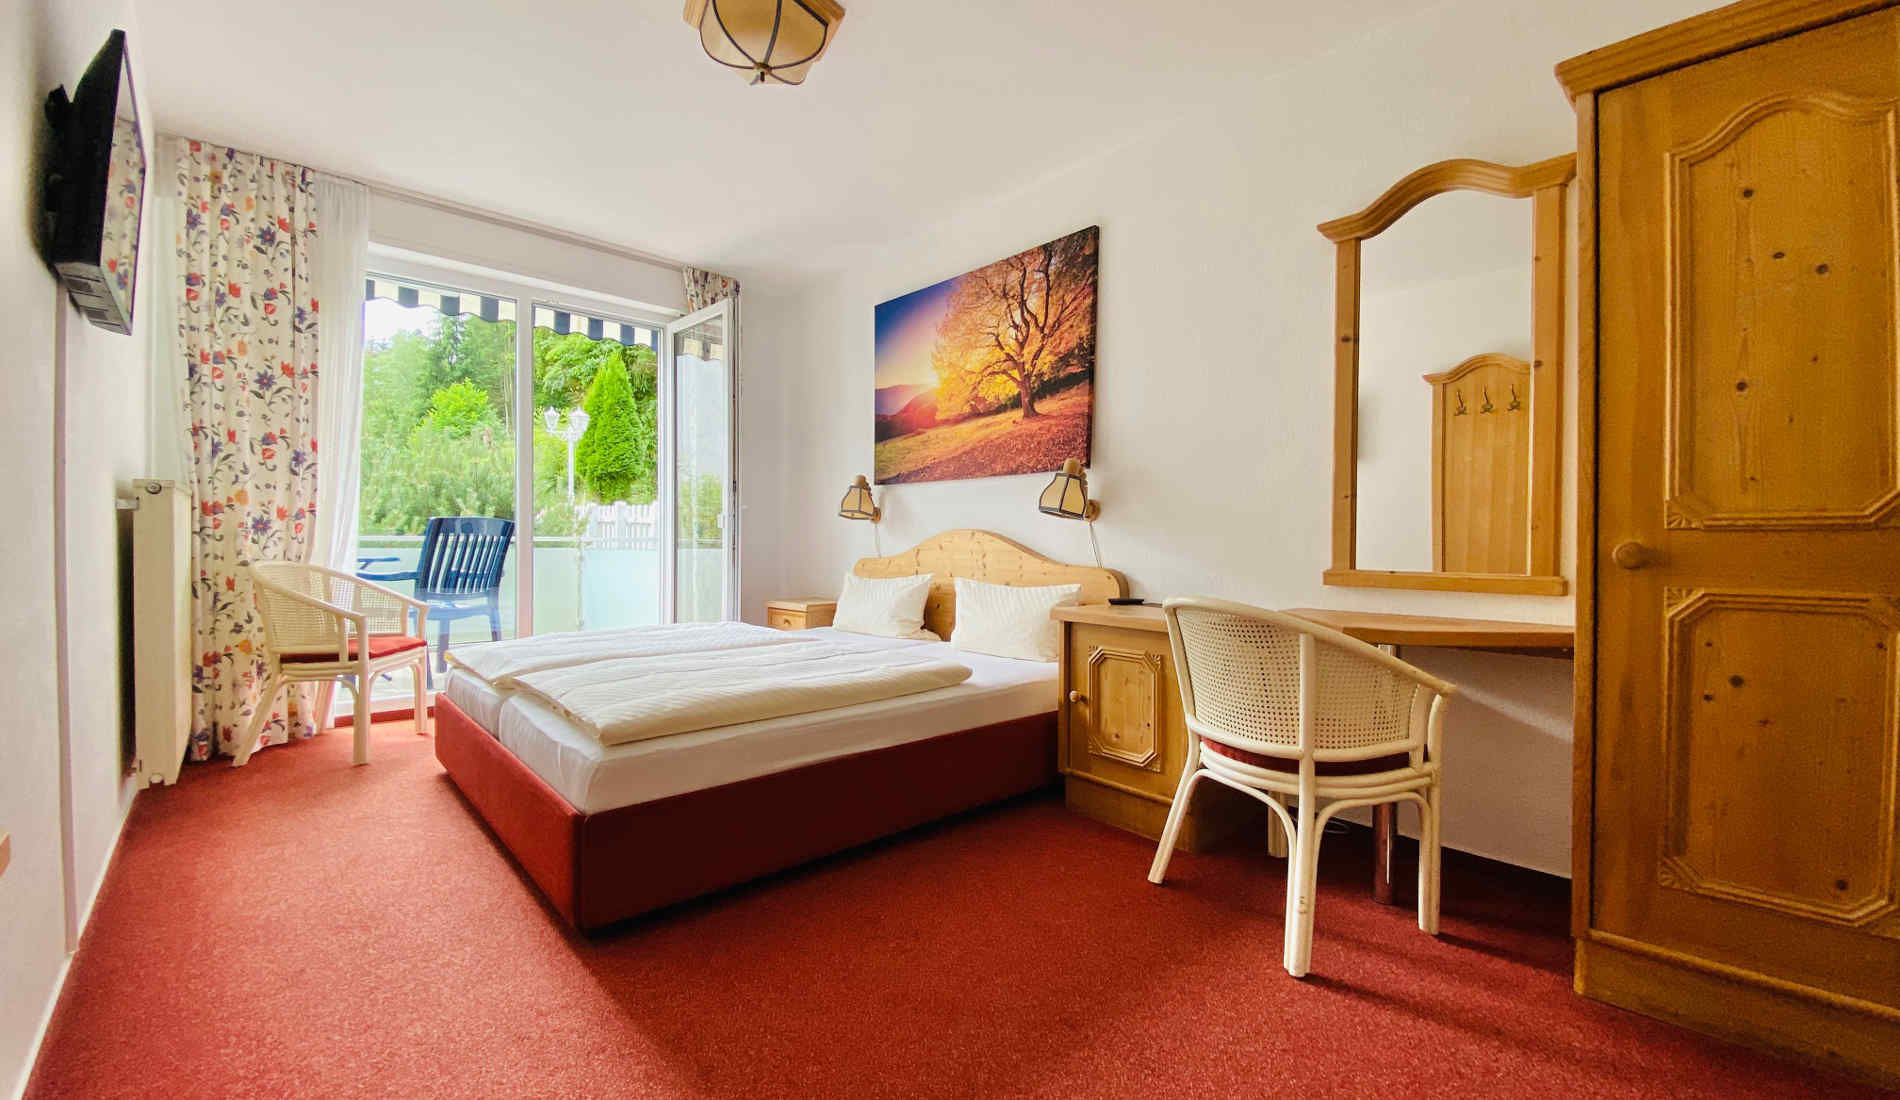 Zimmer mit modernen Bad, Seeblick und Balkon direkt am Nationalpark Kellerwald-Edersee.